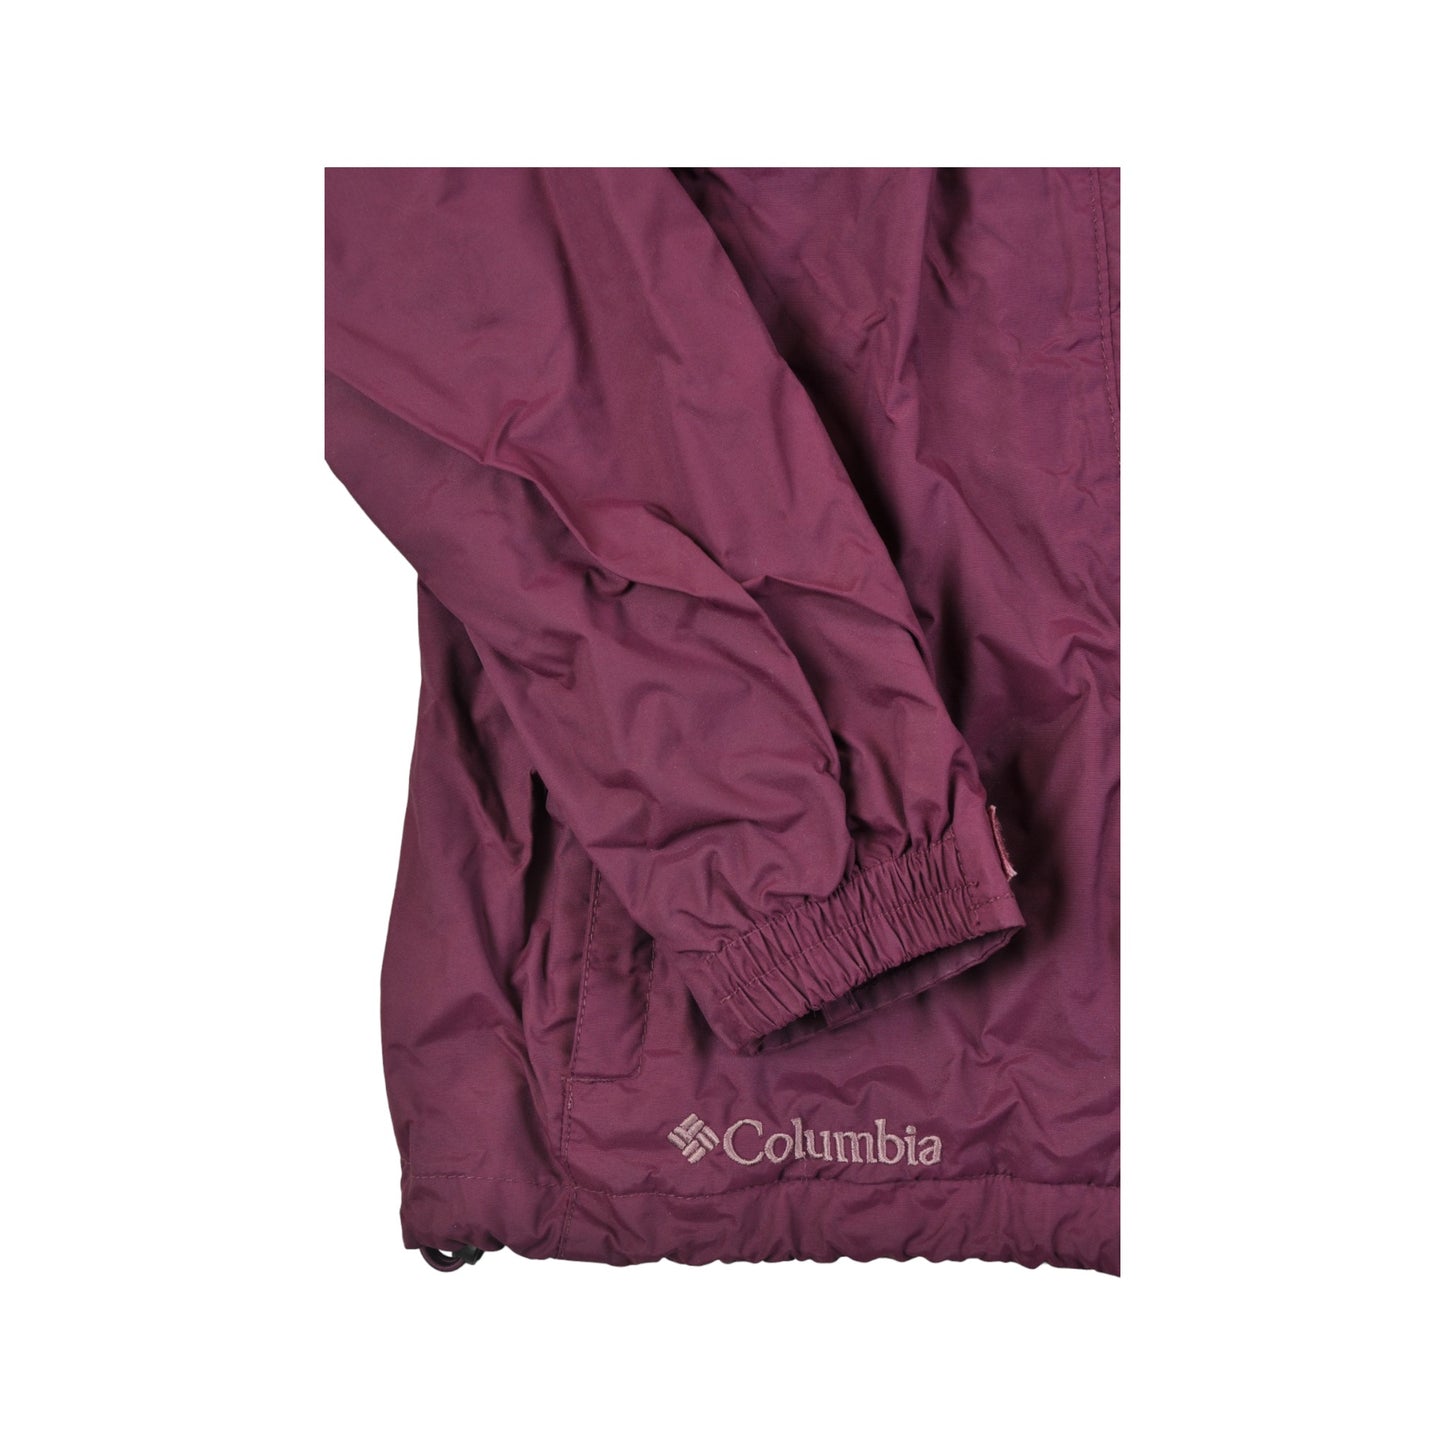 Vintage Columbia Jacket Waterproof Purple Ladies Small